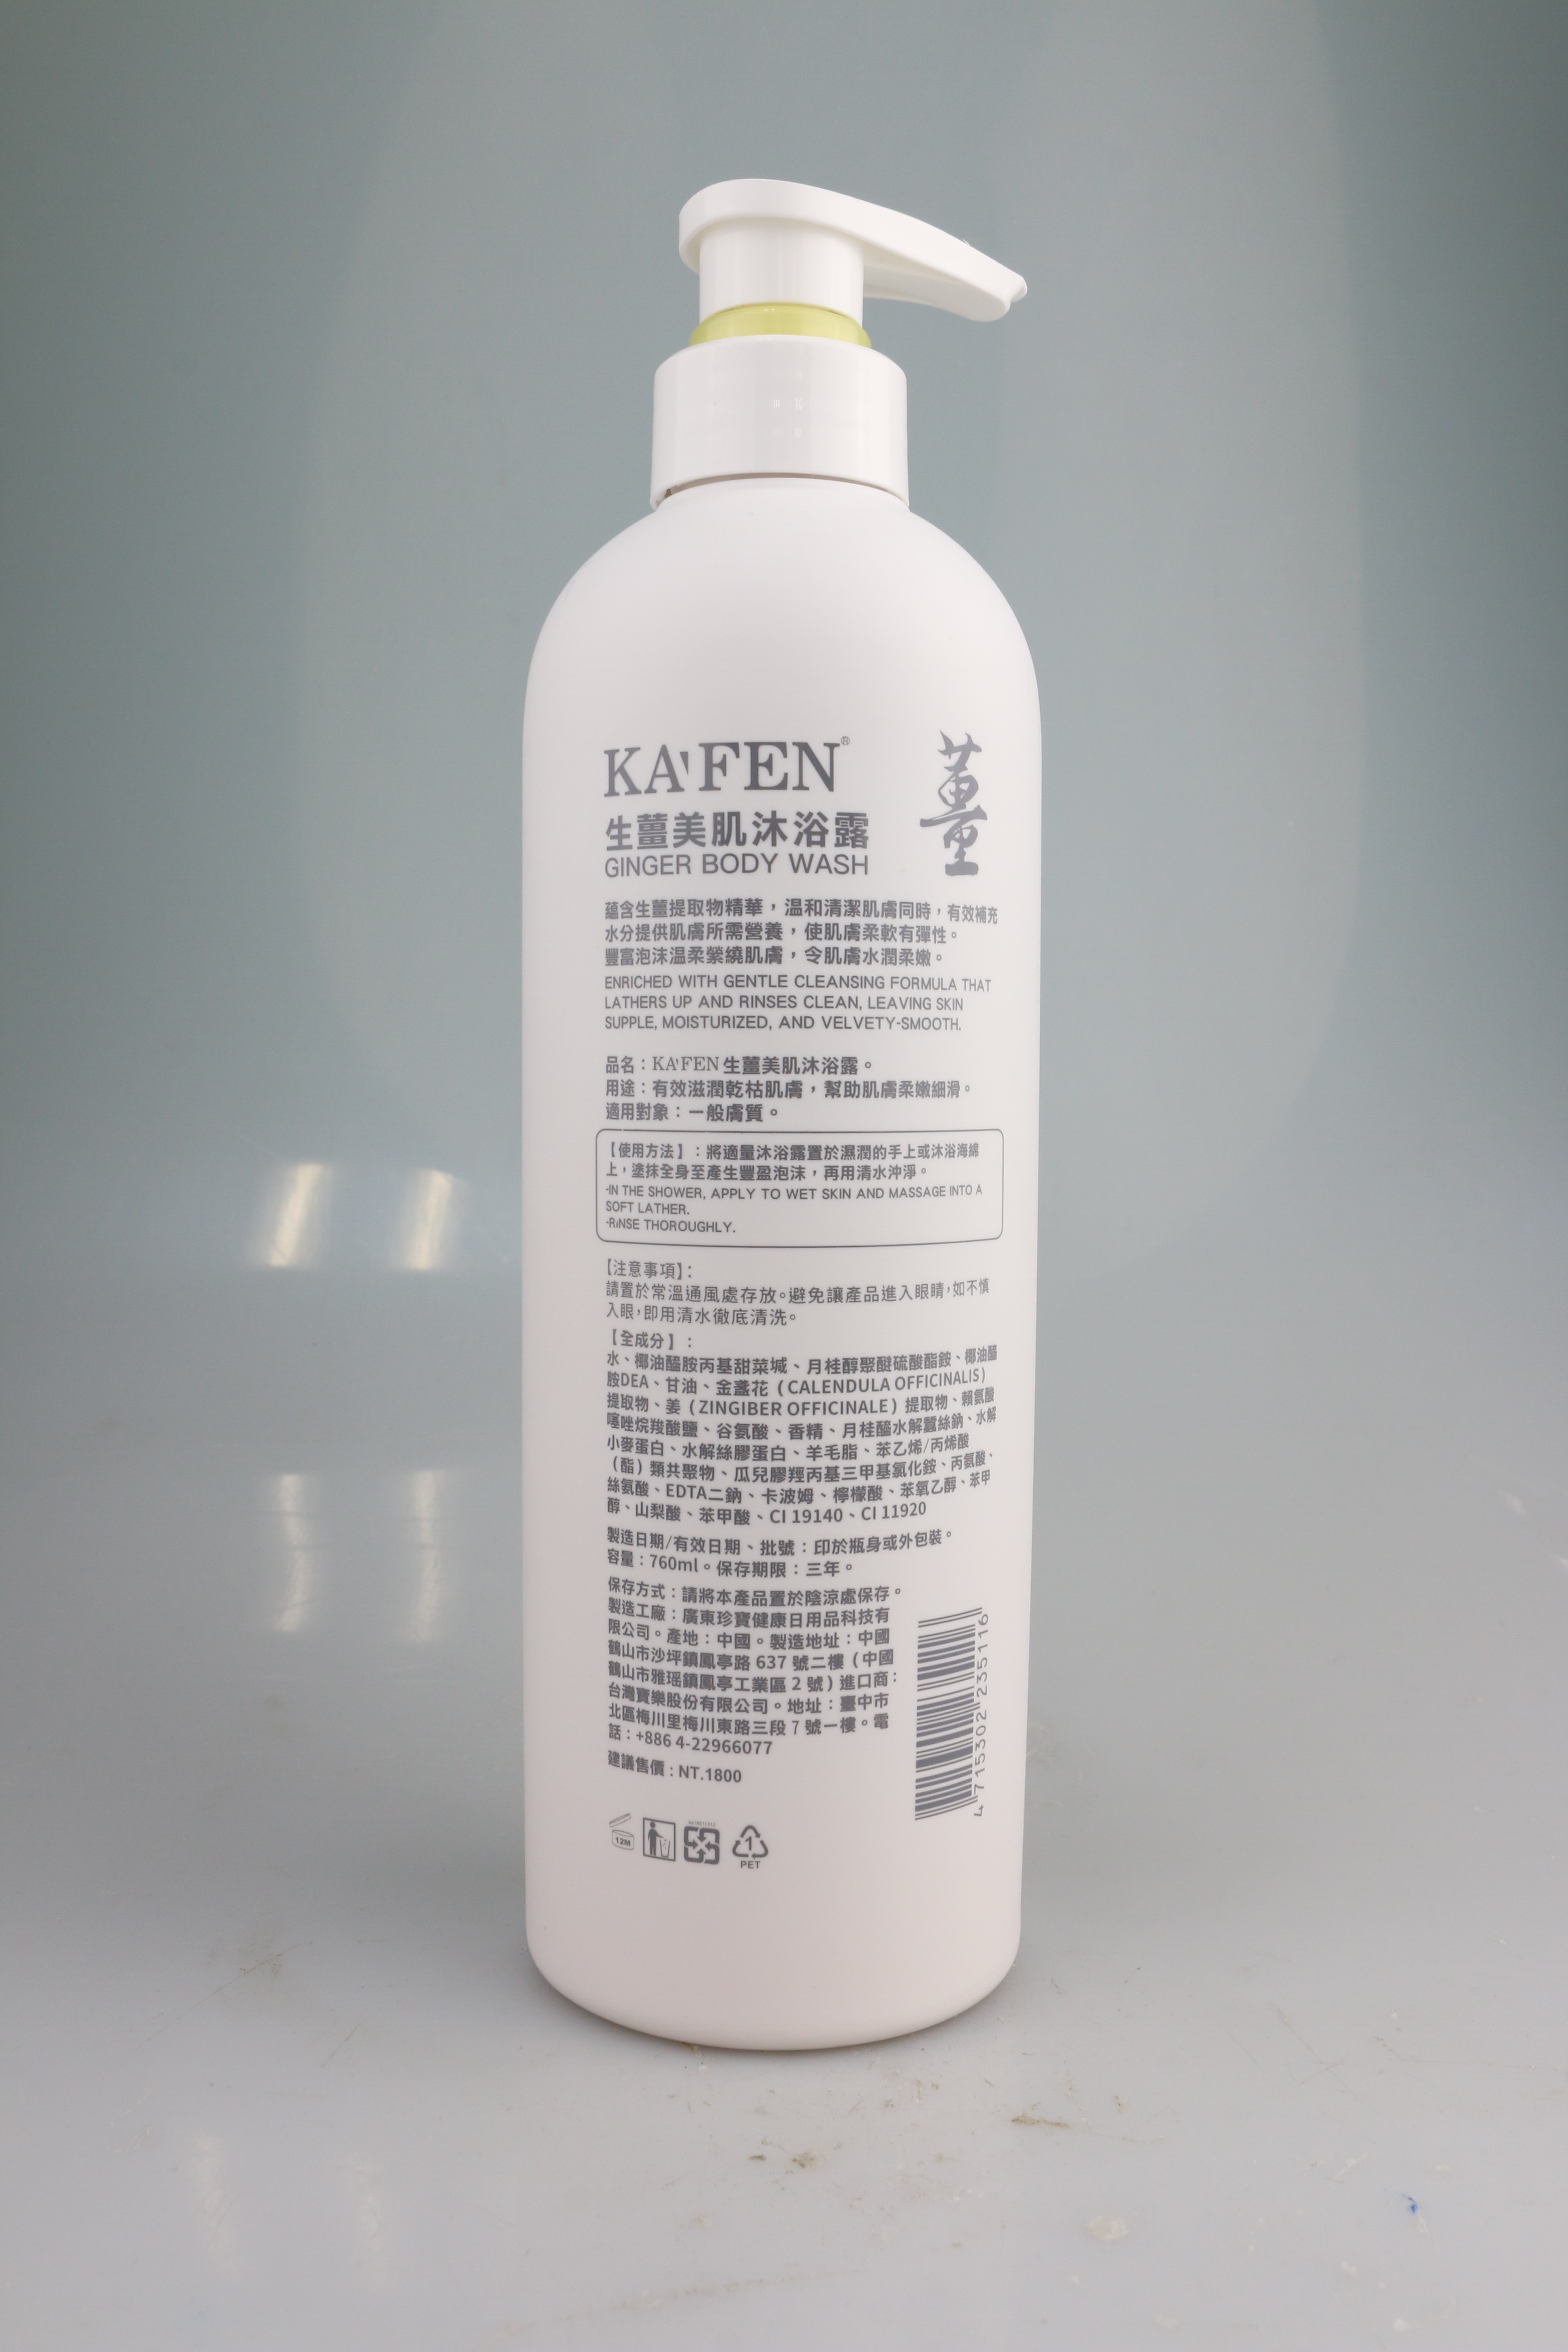 【KAFEN】生薑系列洗髮精/沐浴乳760mL